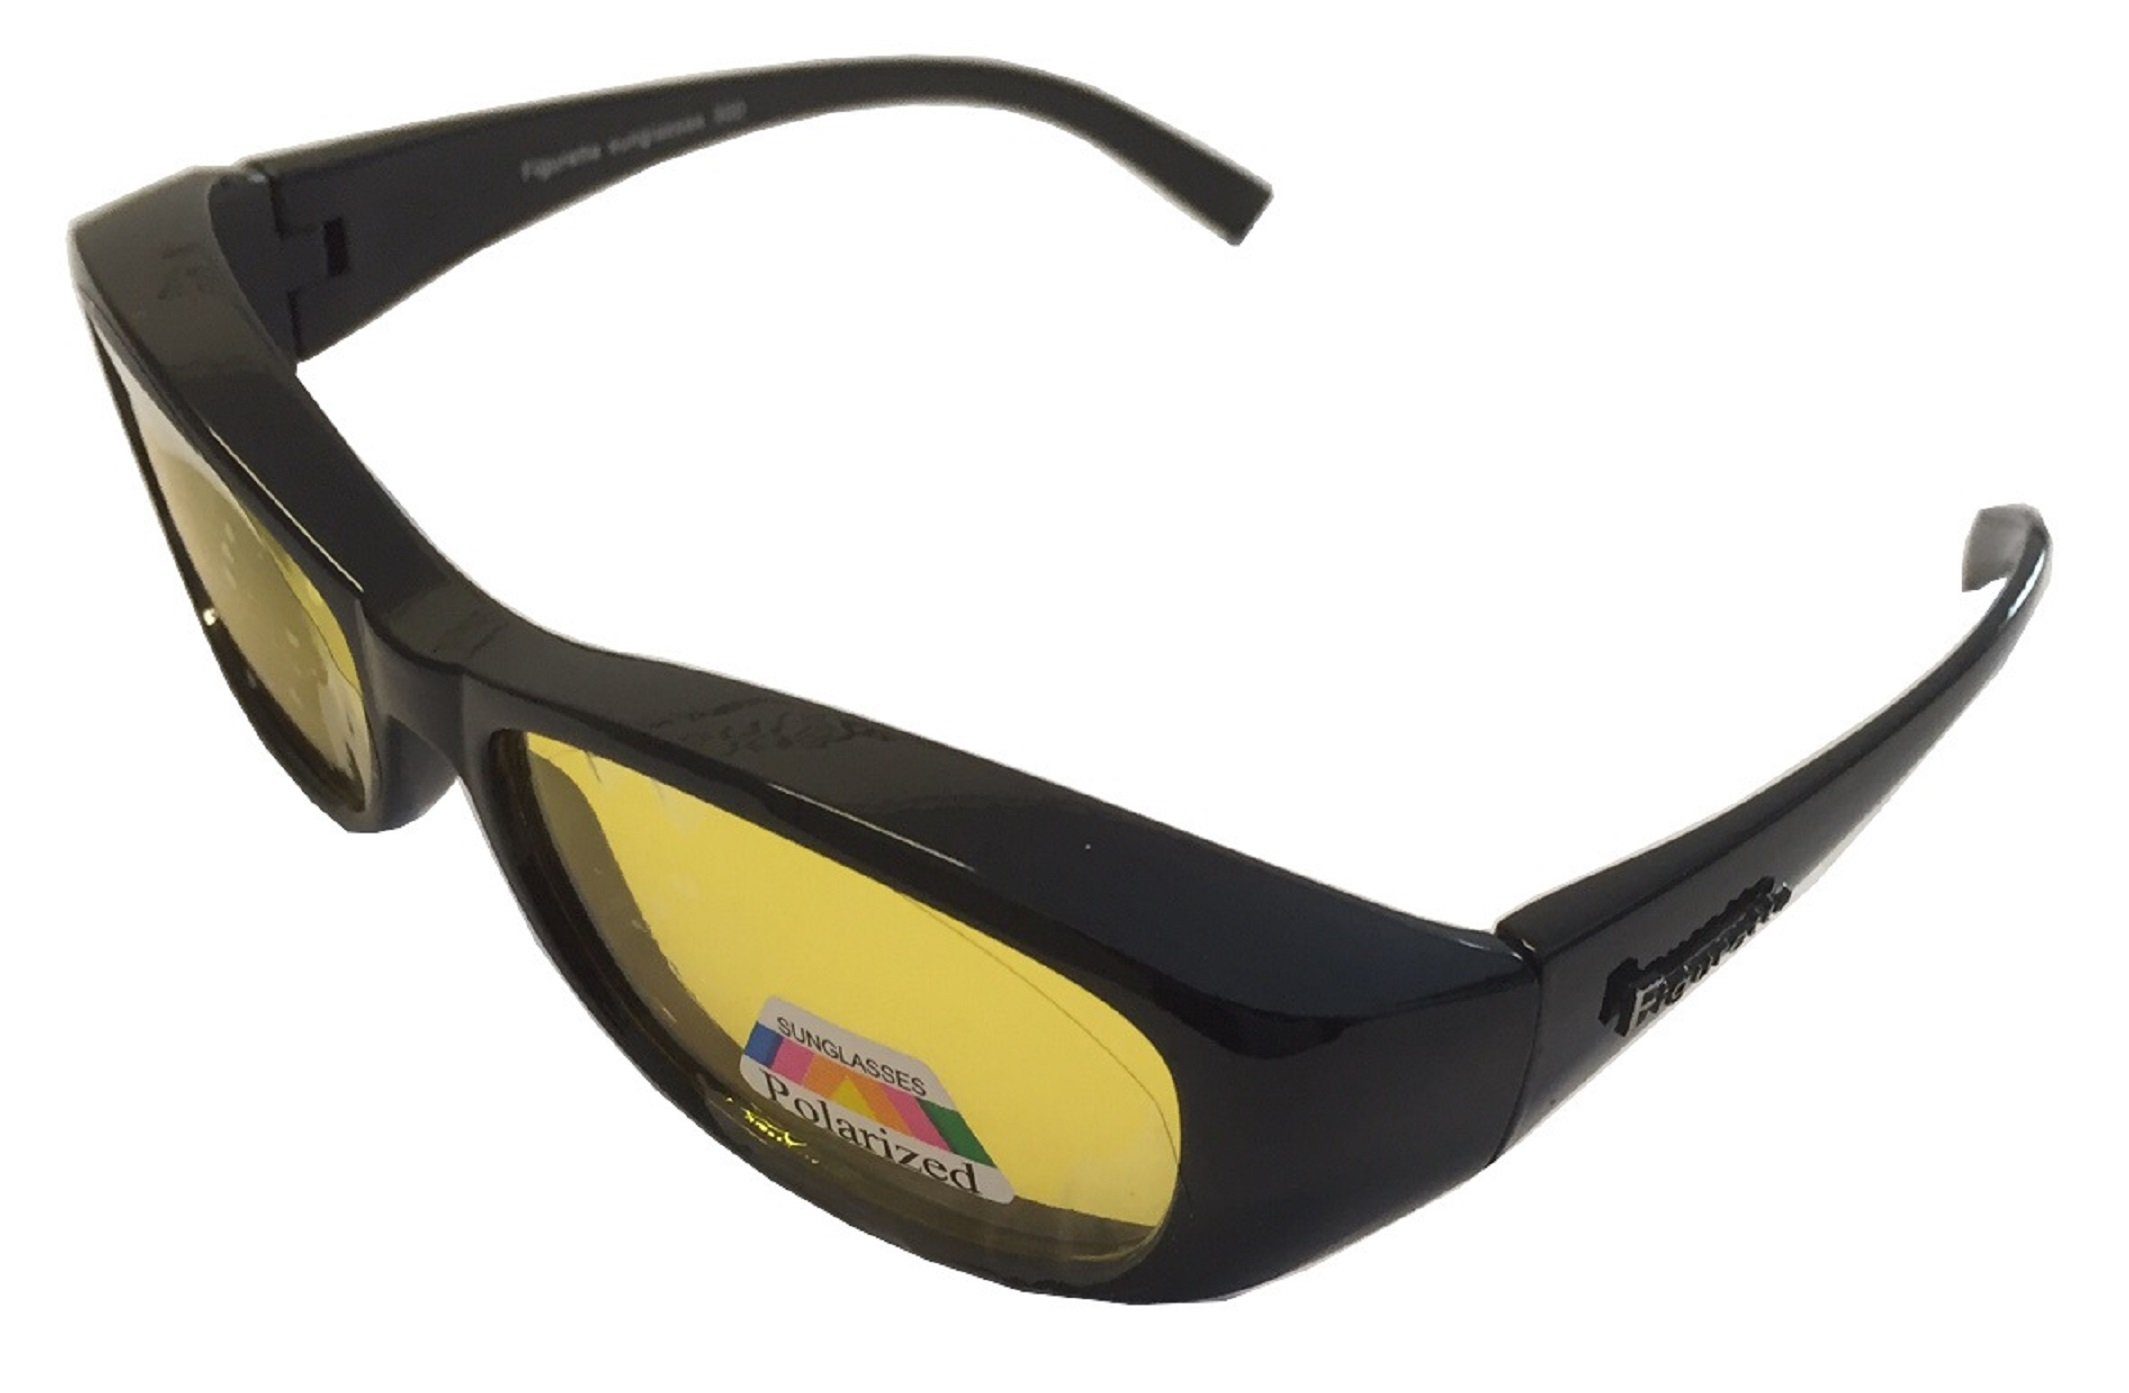 Figuretta Sonnenbrille Figuretta Sonnenbrille Überbrille aus in Nacht-Überbrille mit Gläsern TV UV-Schutz der Schutz UV schwarz Brille Werbung gelben hoher